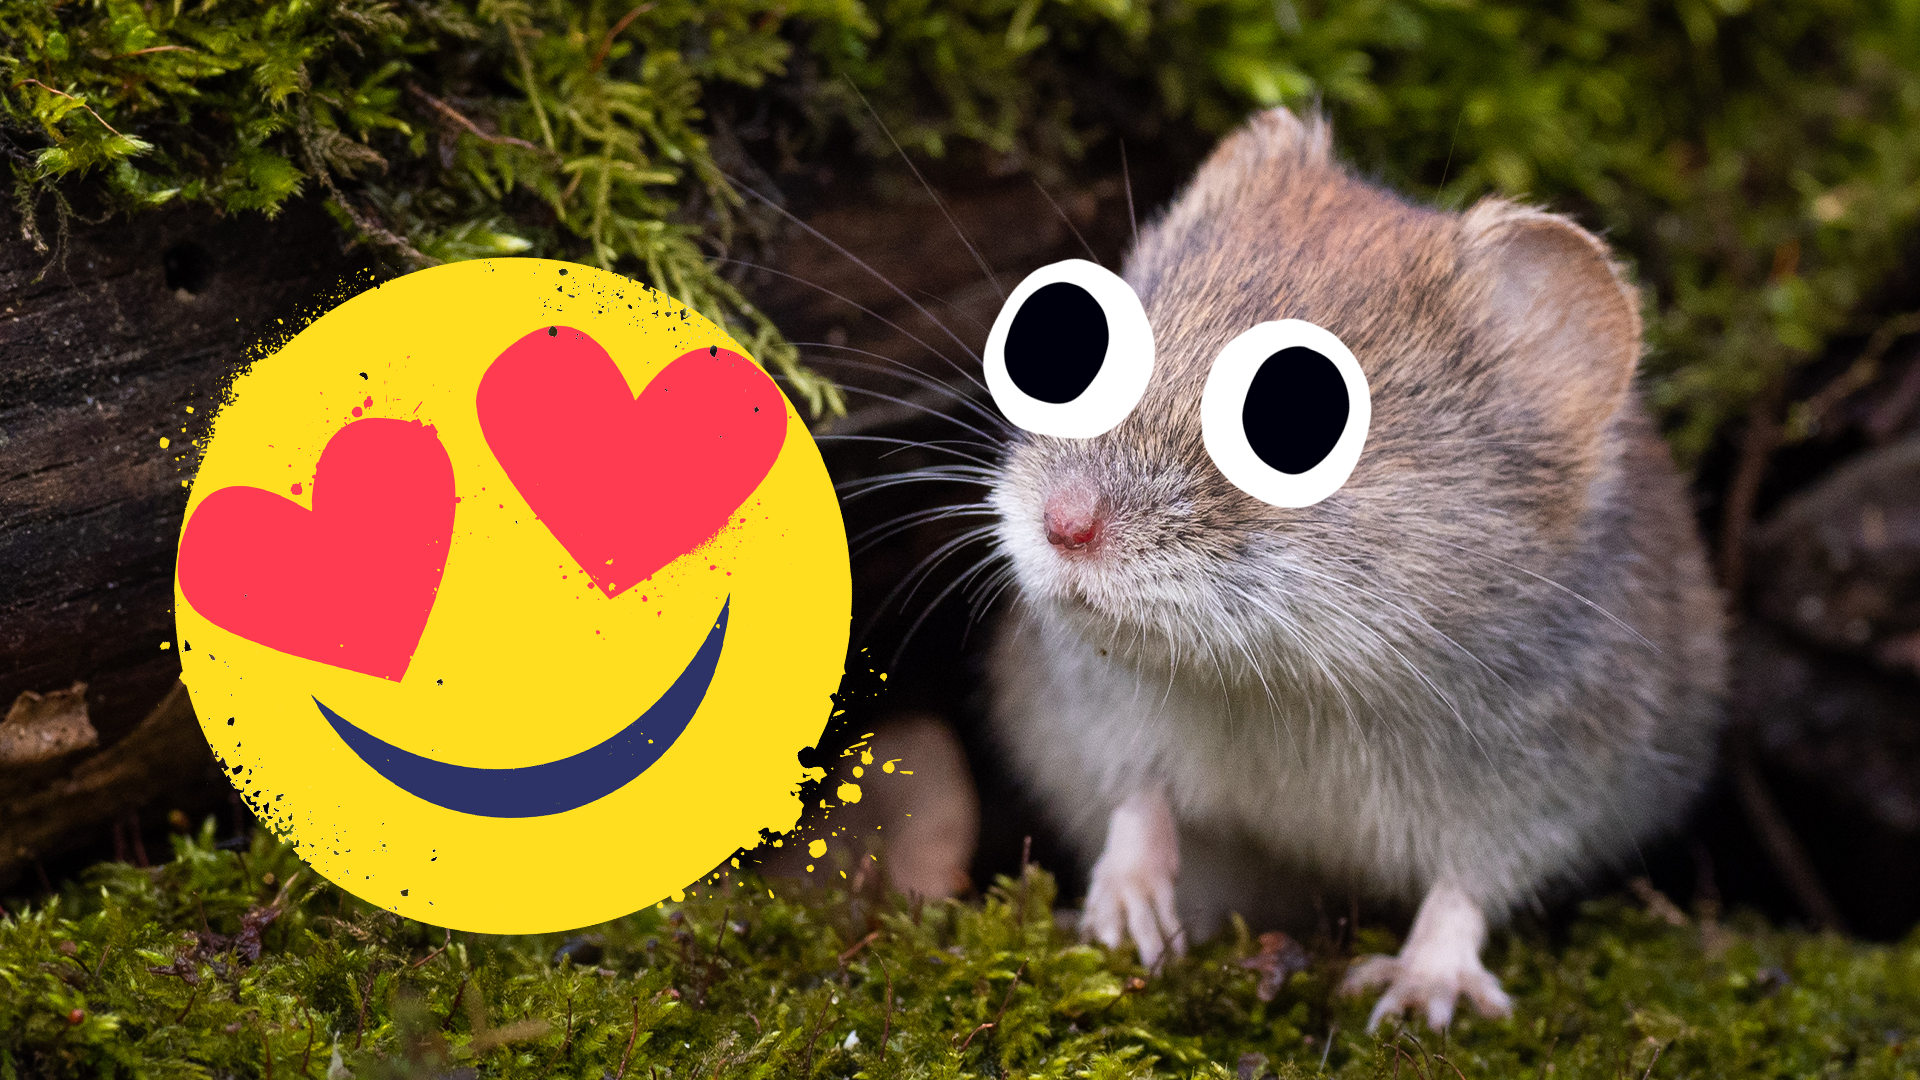 A cute lil vole and a heart eyes emoji